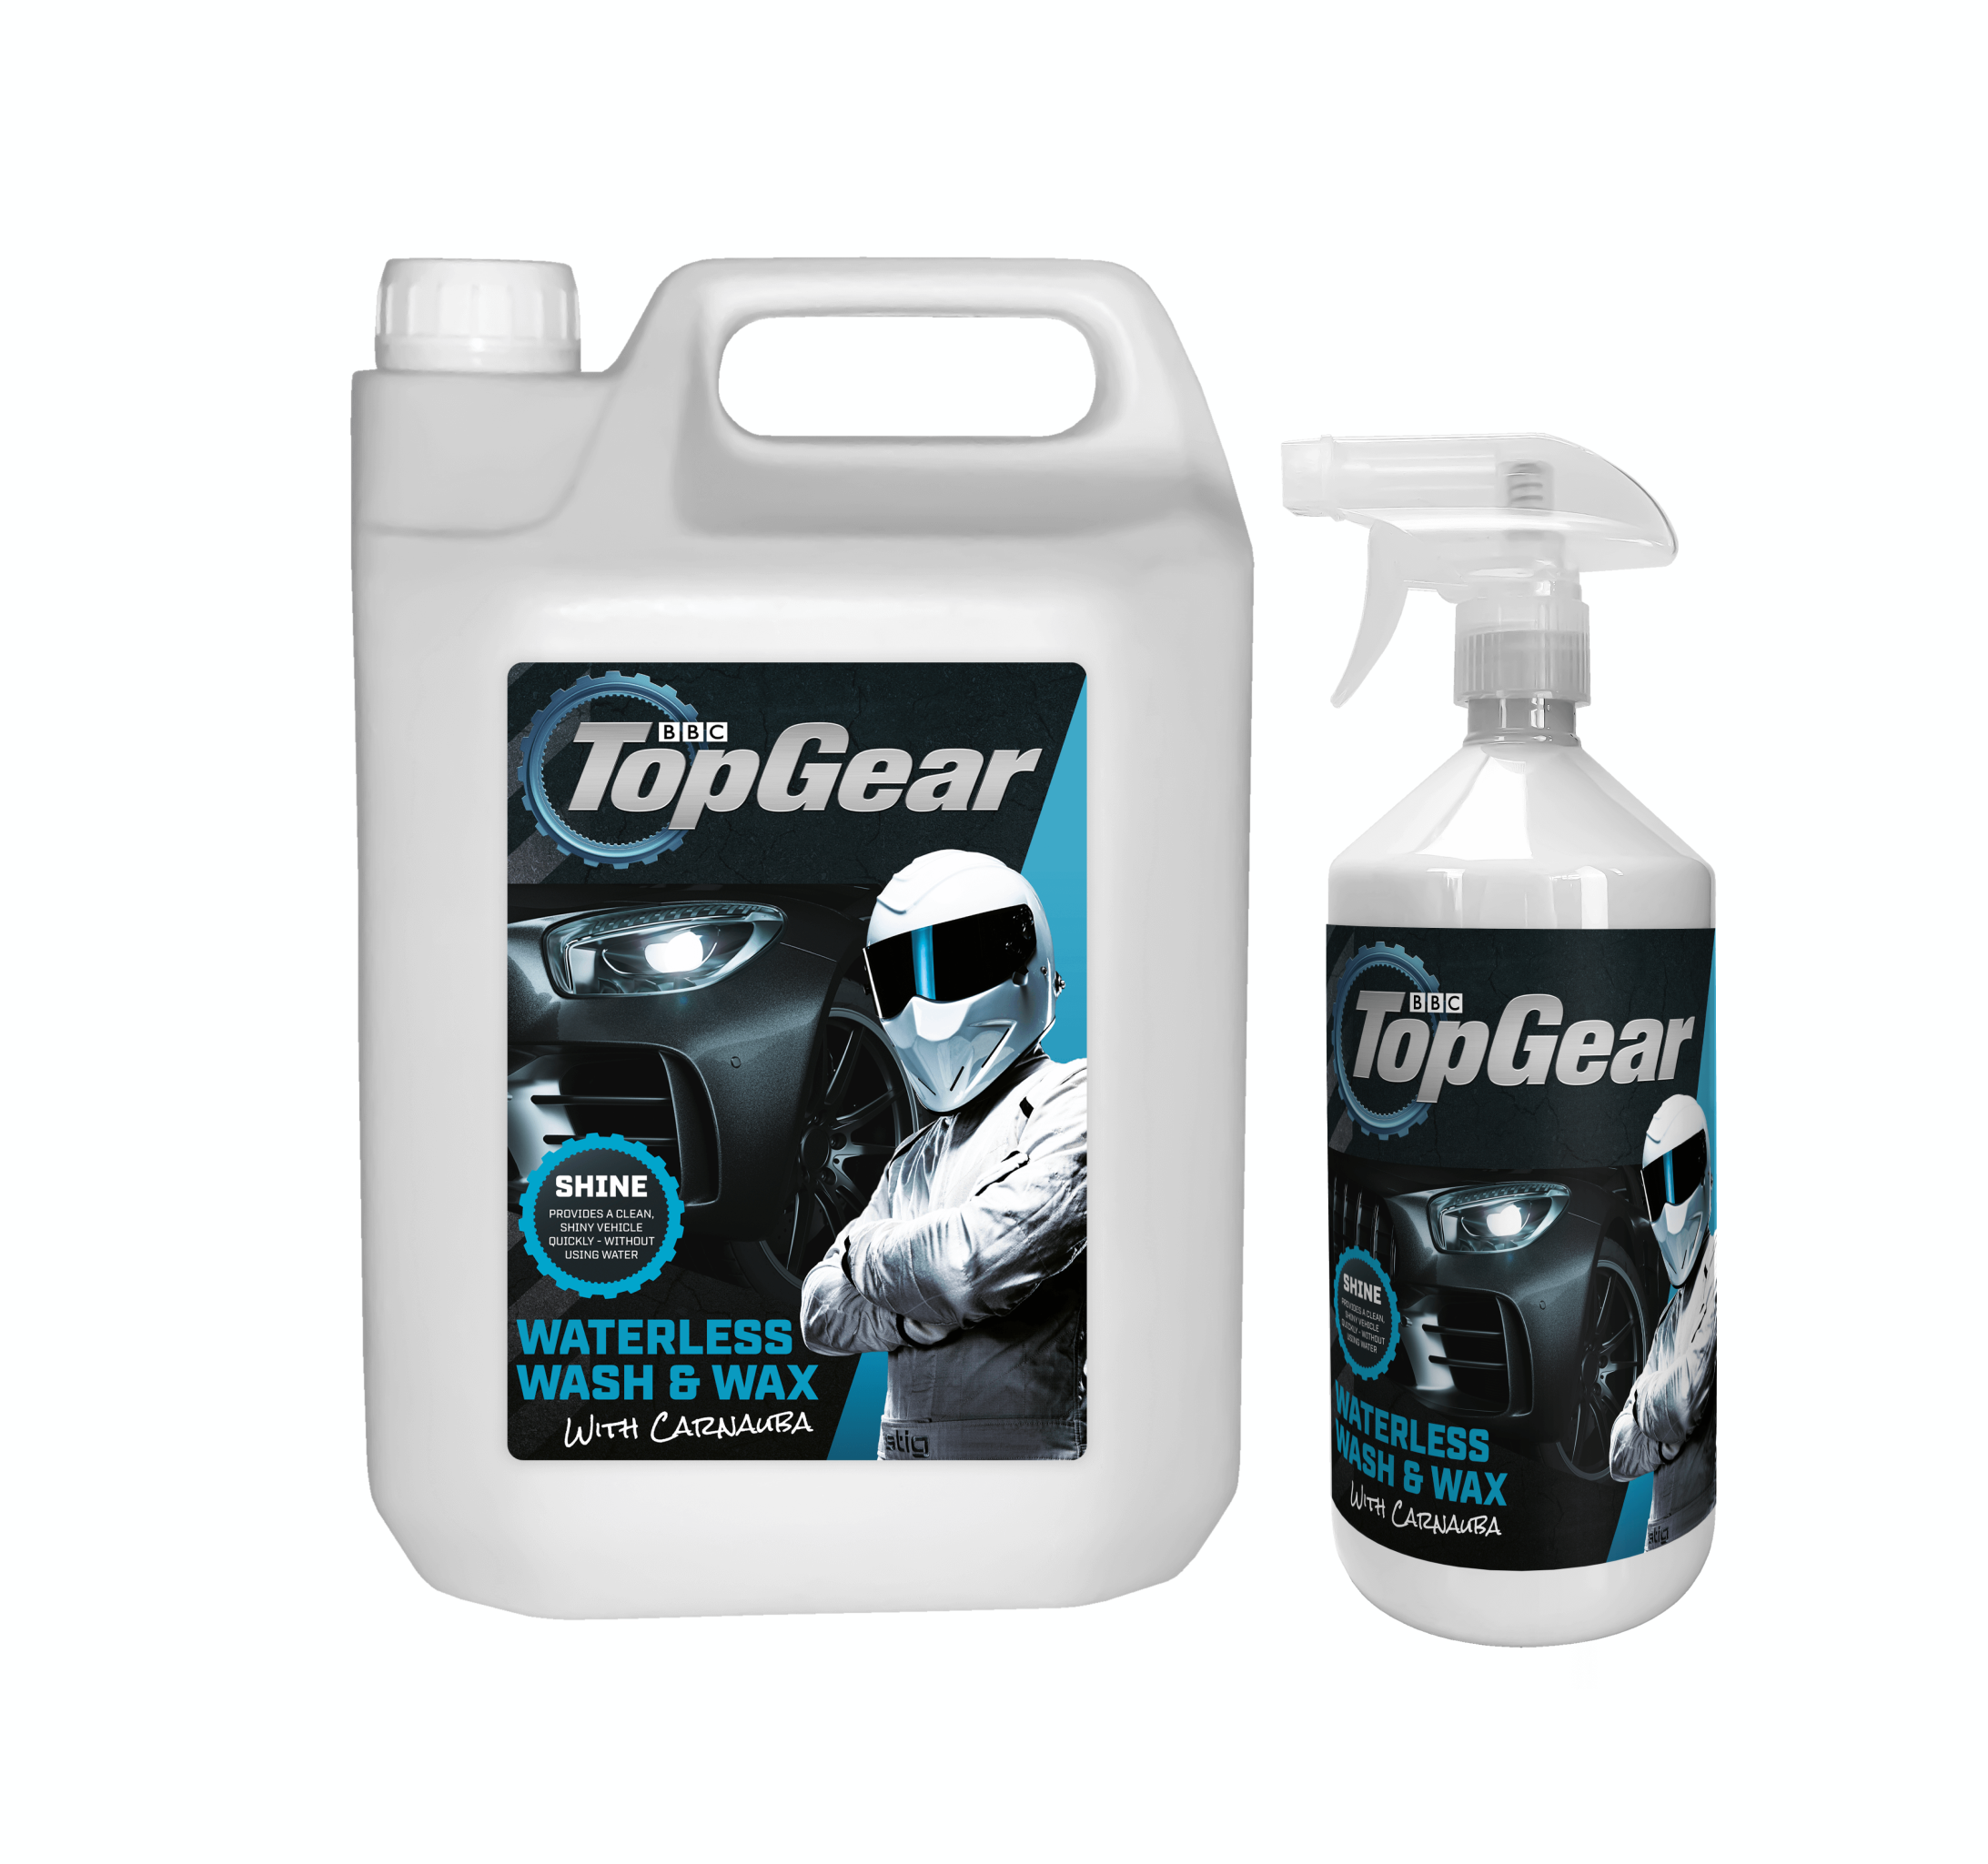 Top Gear Waterless Wash & Wax 5L + 1L